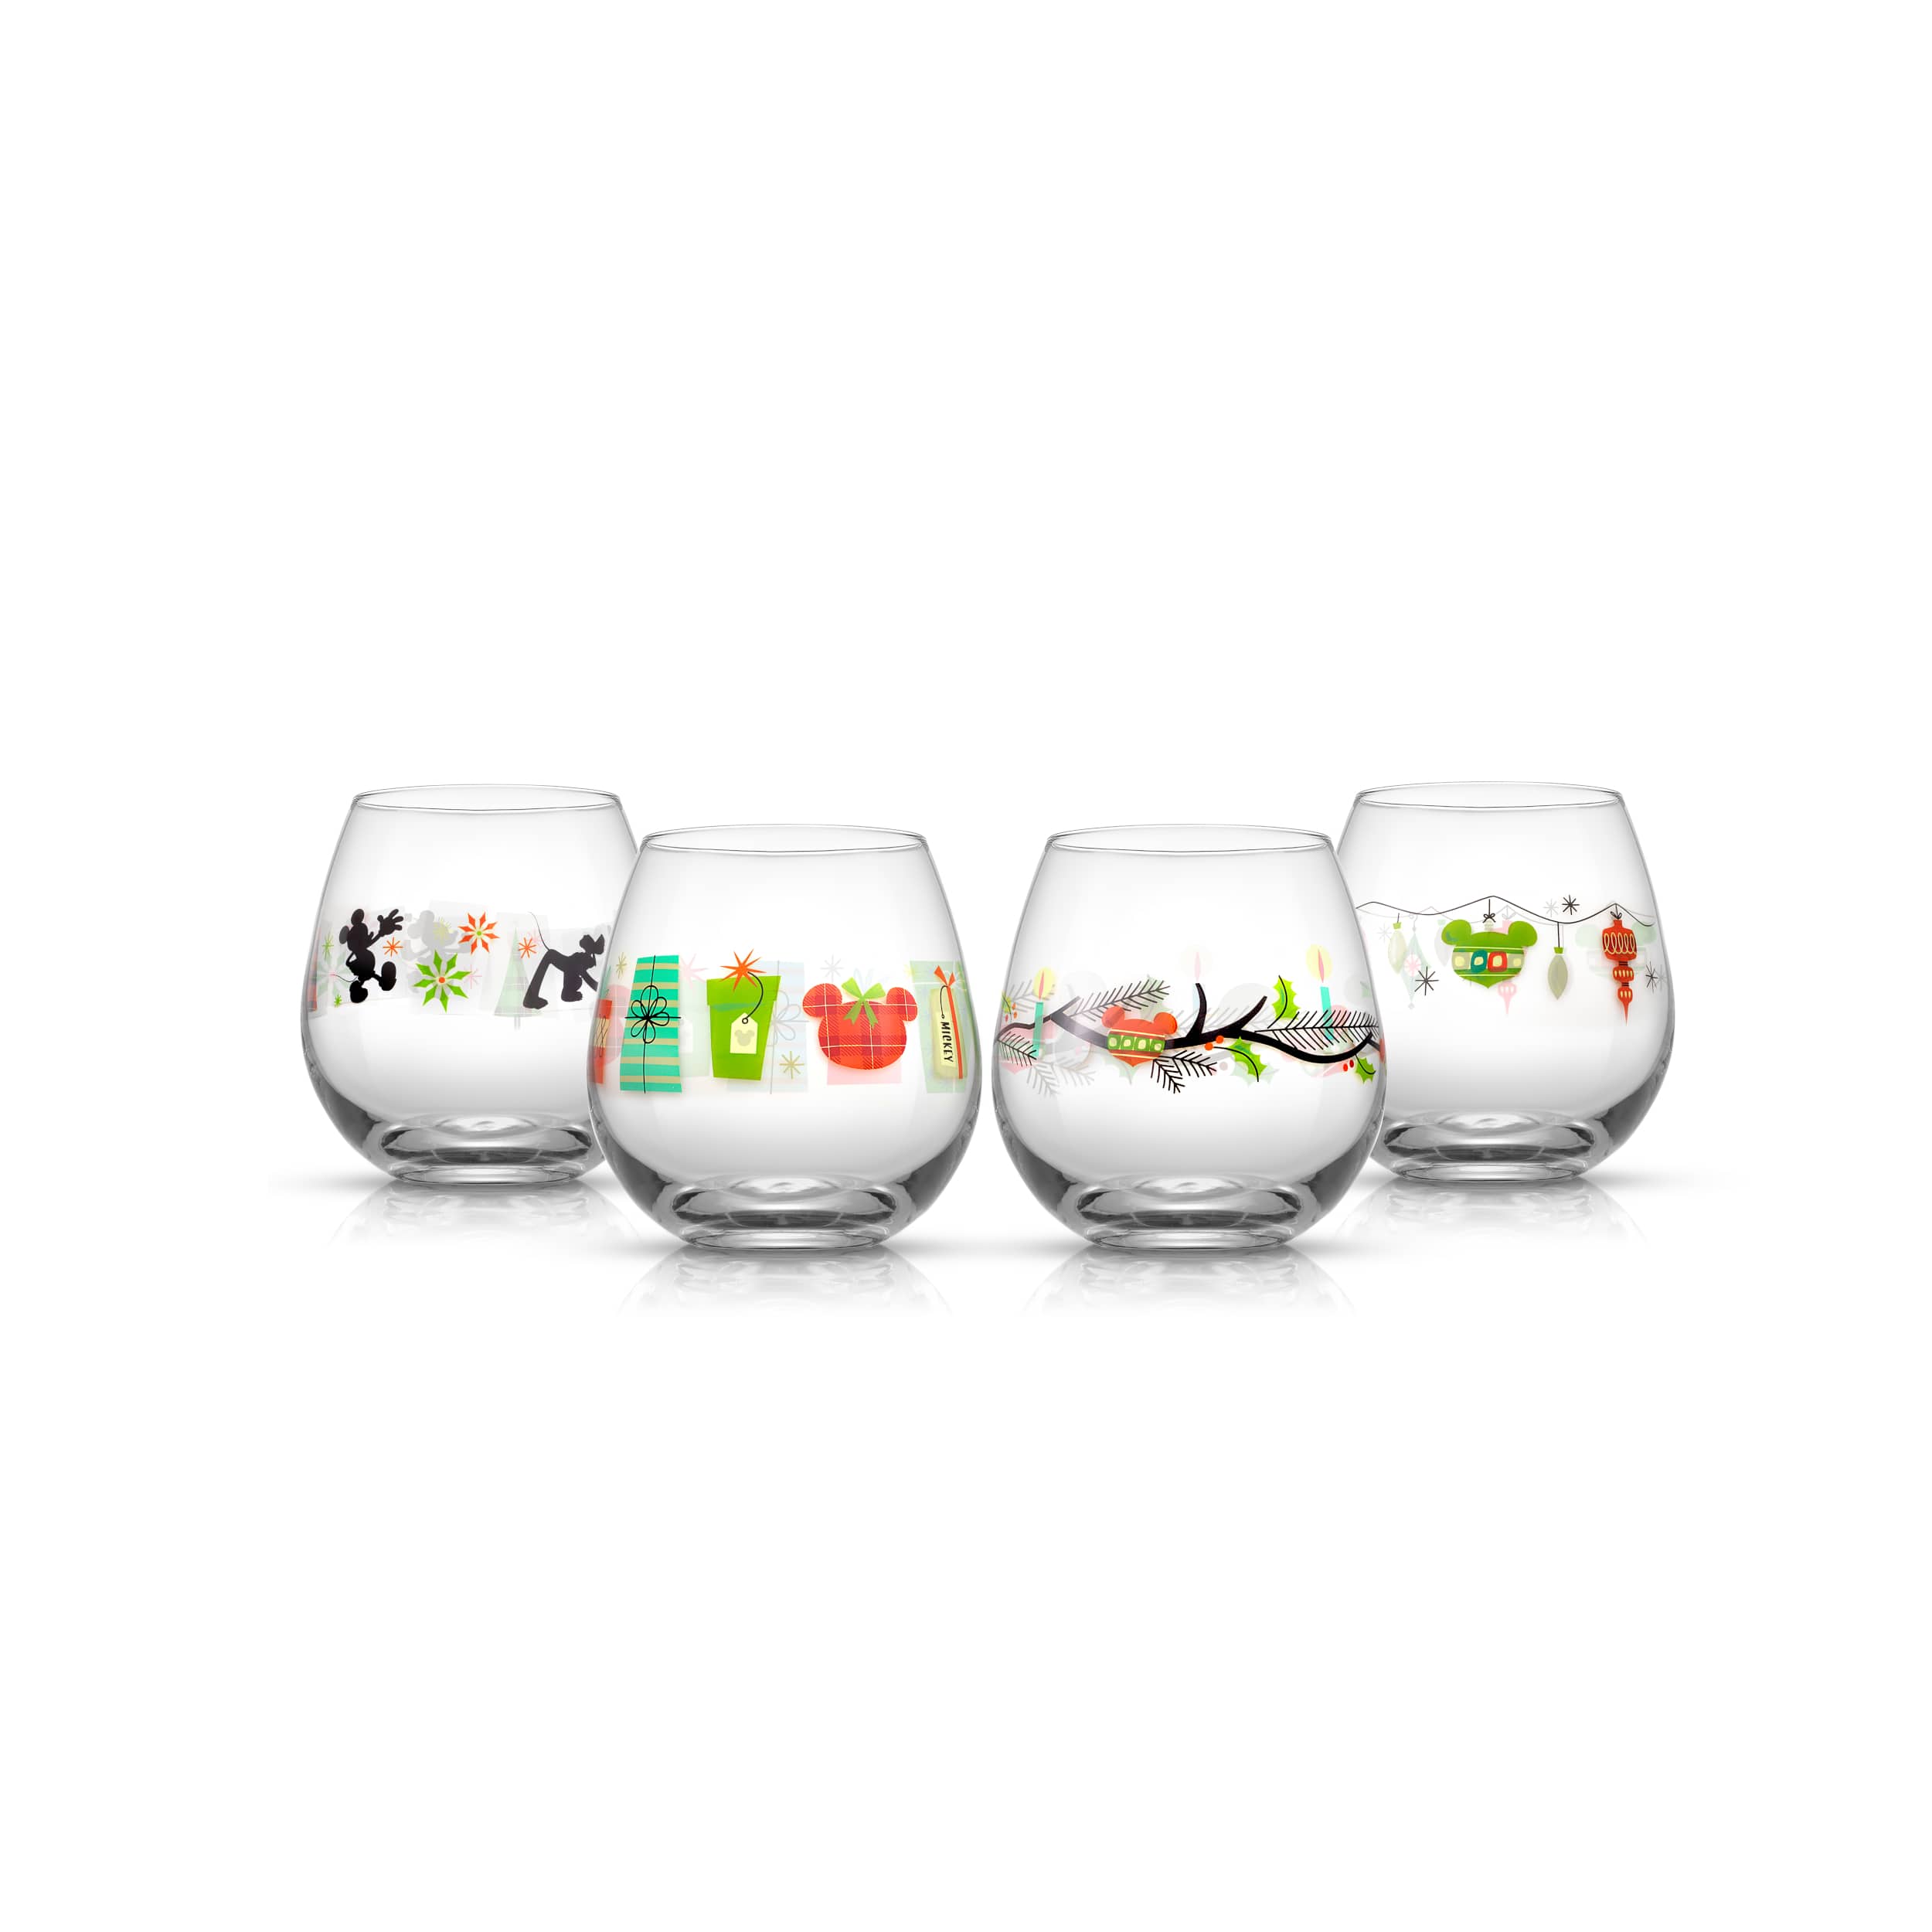 Santa Mickey wine glasses $6.99 @homegoods #homegoods #homegoodsfinds  #homegoodsfind #homegoodsdisney #homegoodsdisneyfinds #disneyfind…